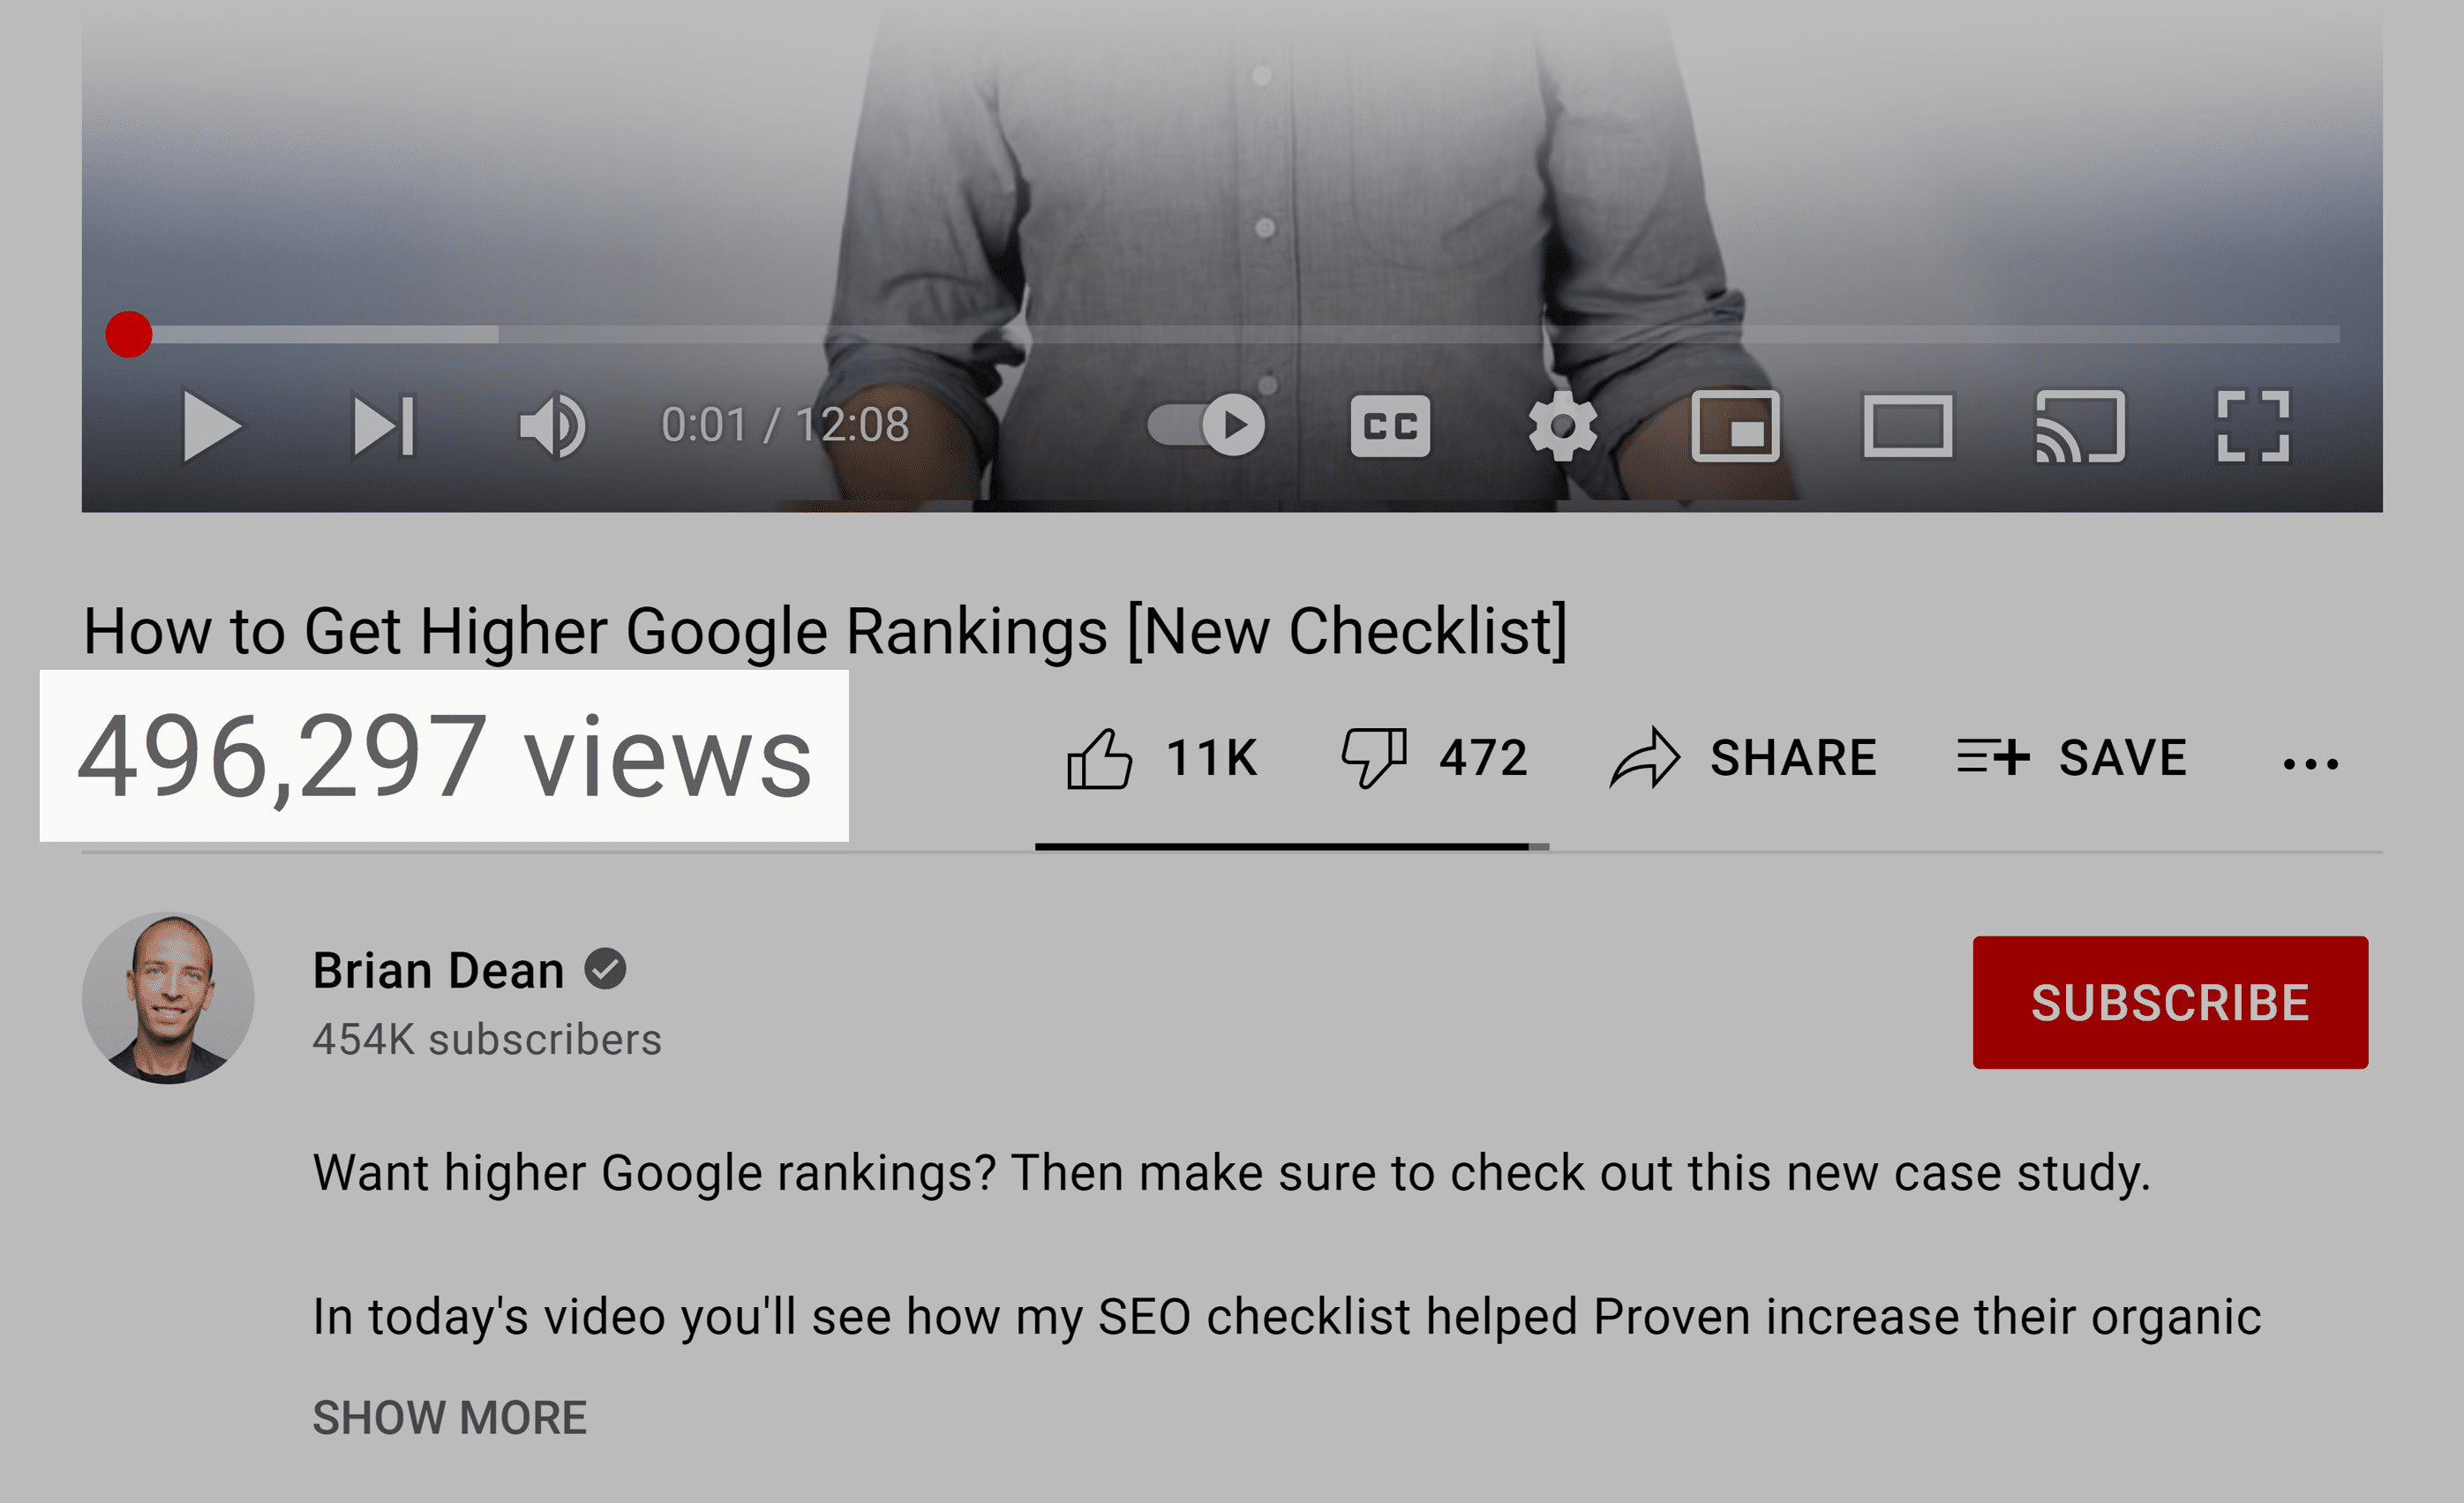 Higher Google rankings – Video views